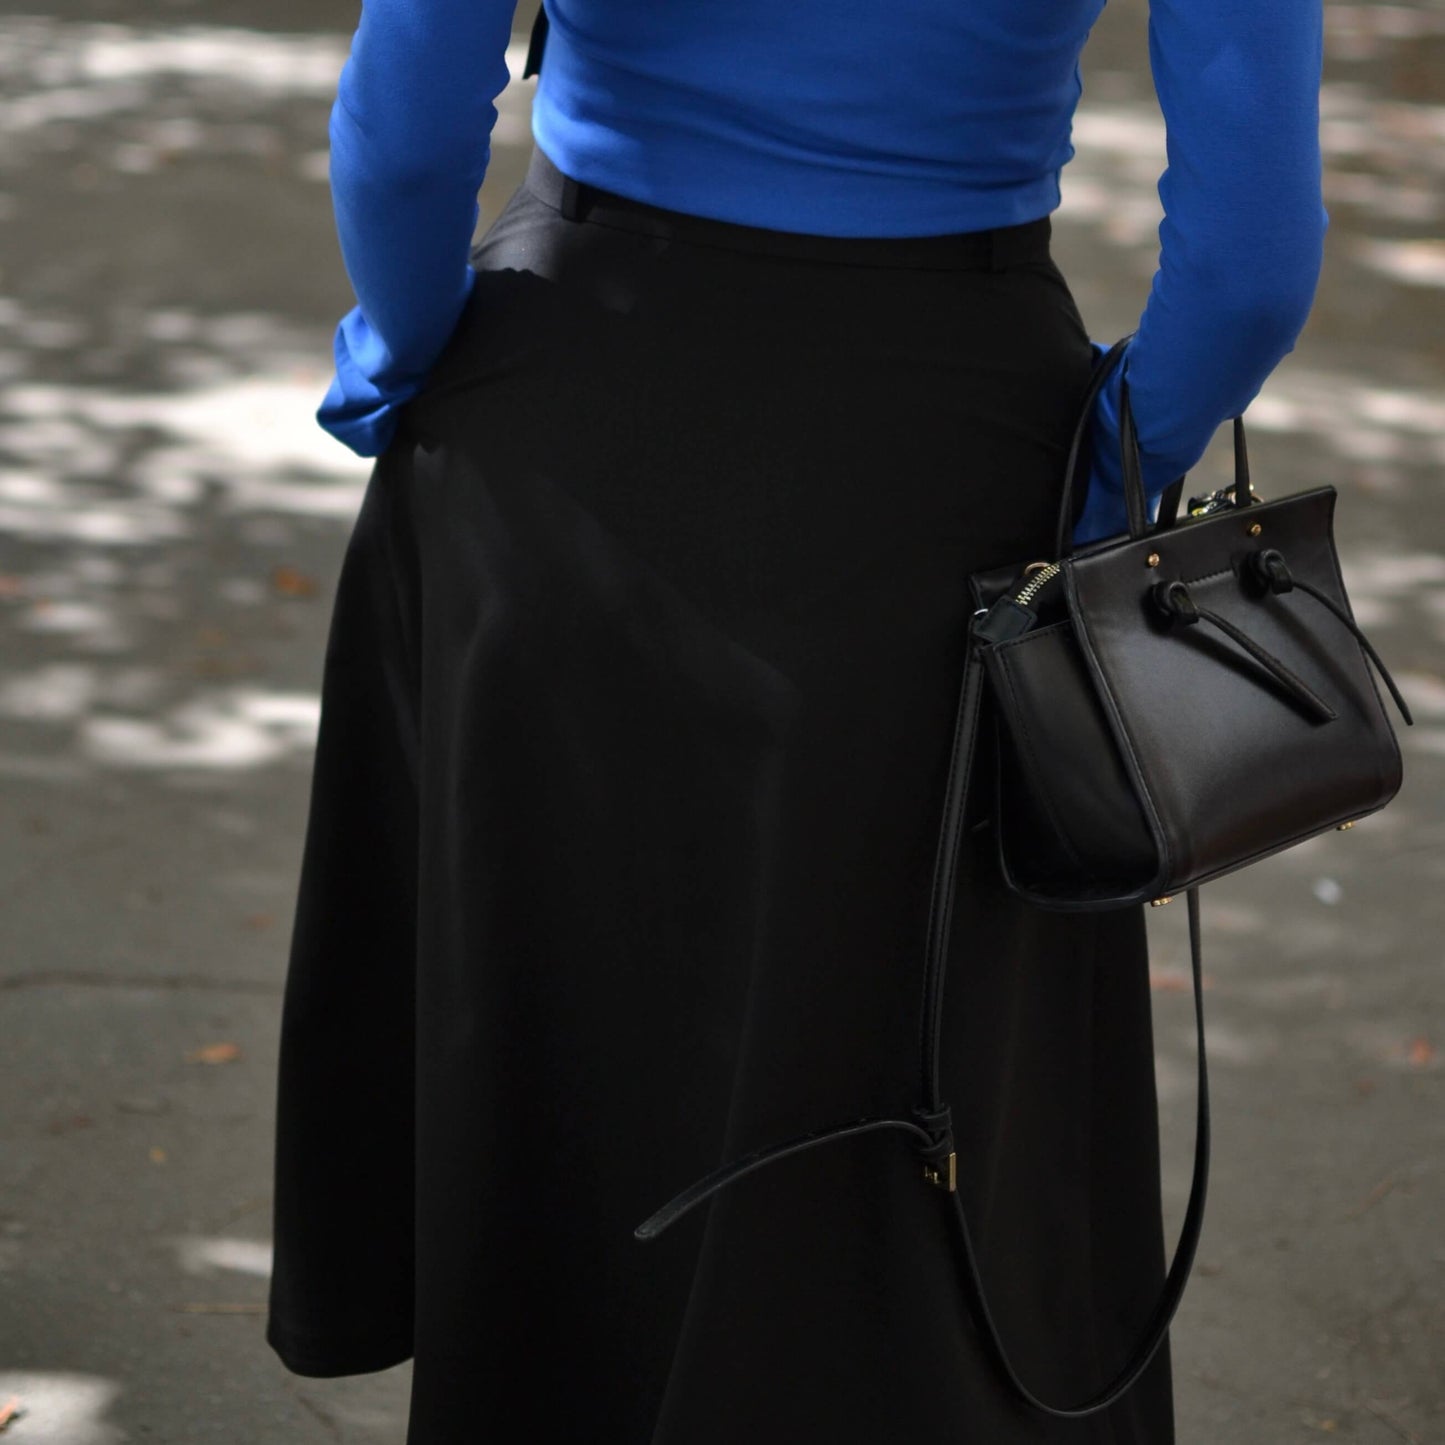 Asymmetric skirt in black